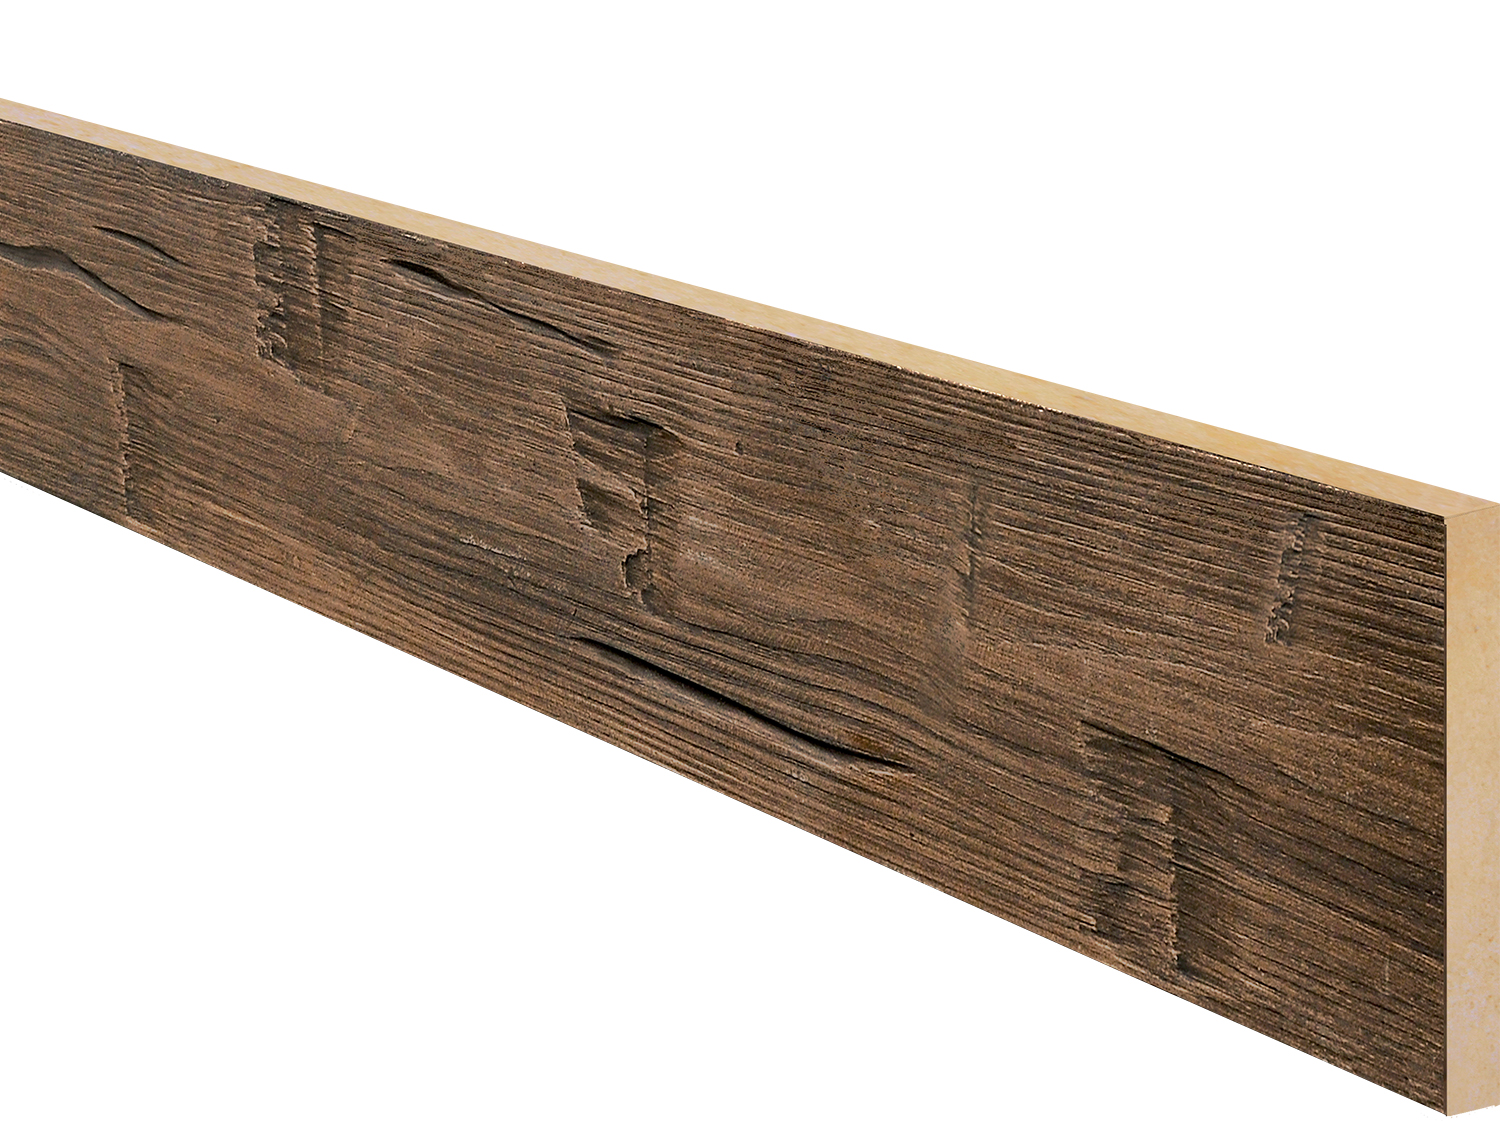 Wood Planks